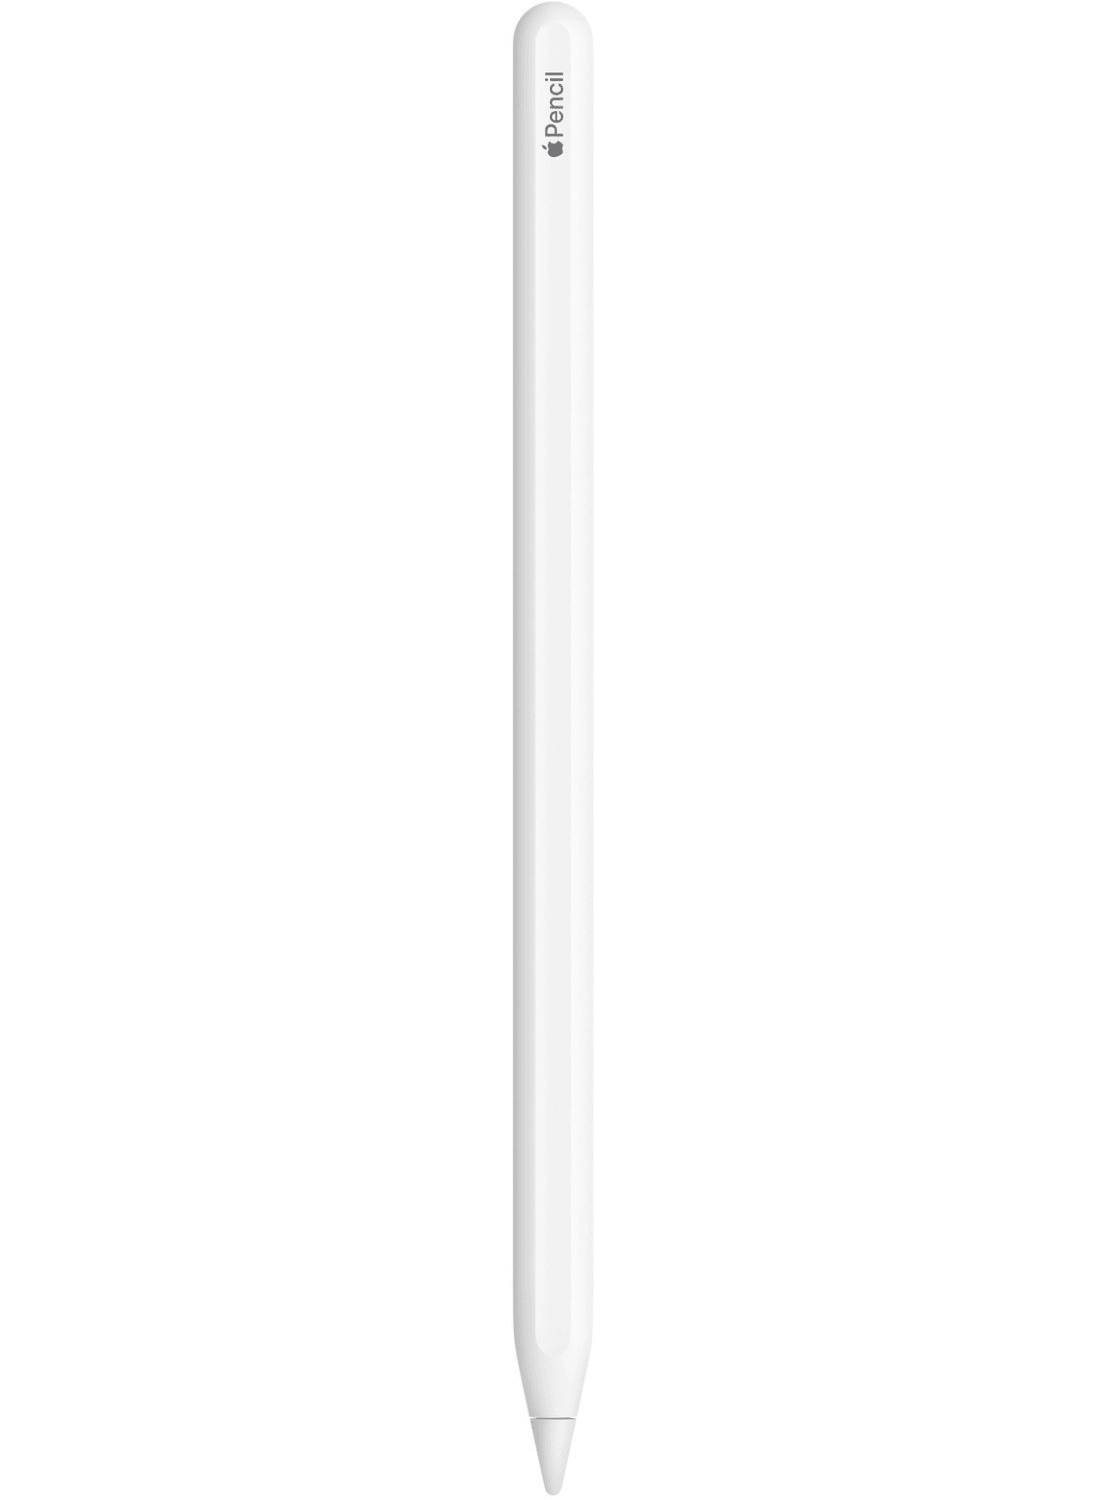 Apple Pencil 2. Generation - CarbonPhone